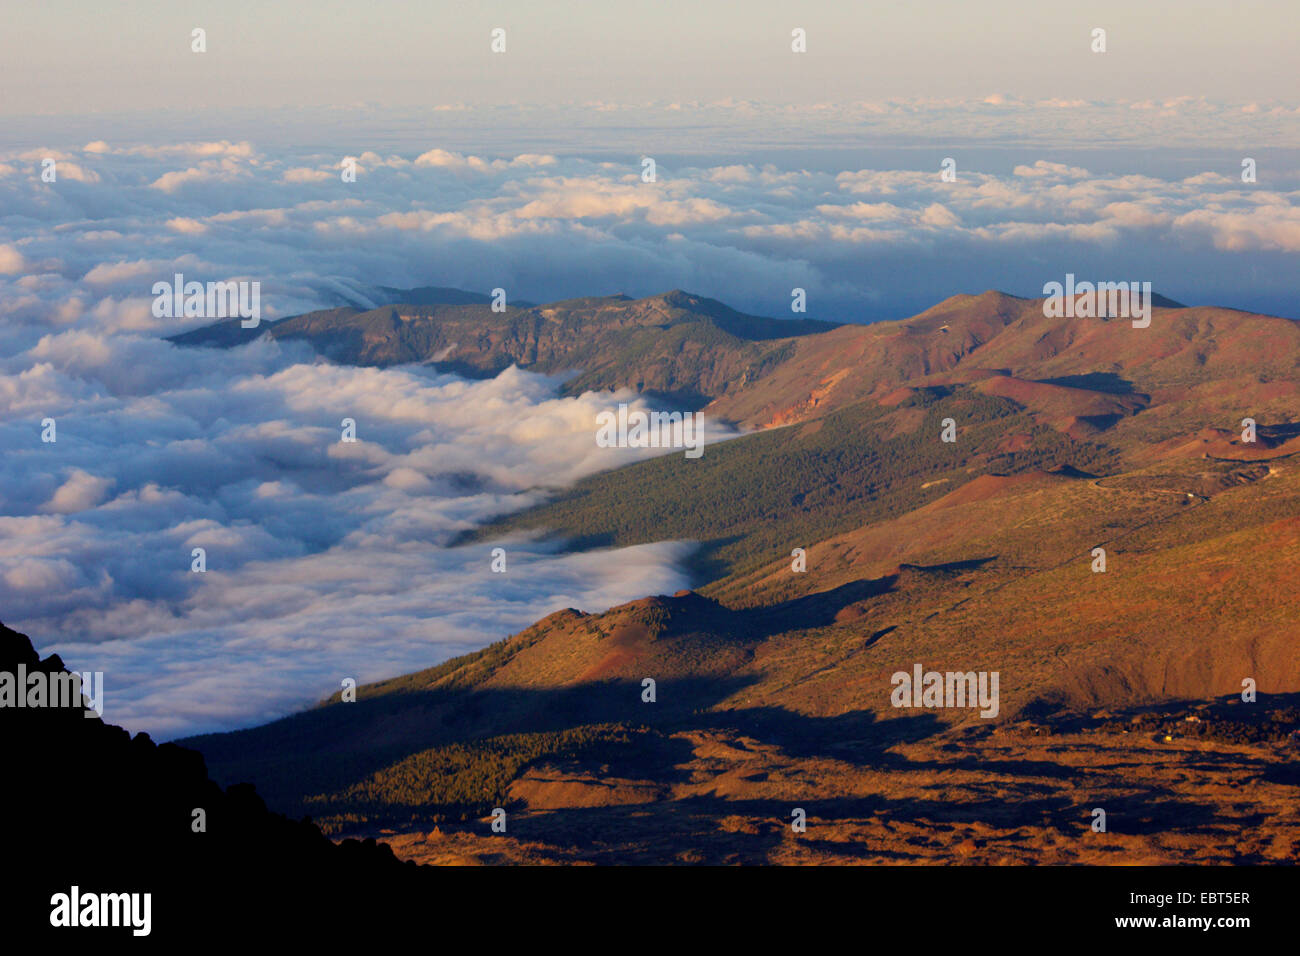 La Cumbre dorsal de la cresta de la montaña en la luz del atardecer, Islas Canarias, Tenerife Foto de stock